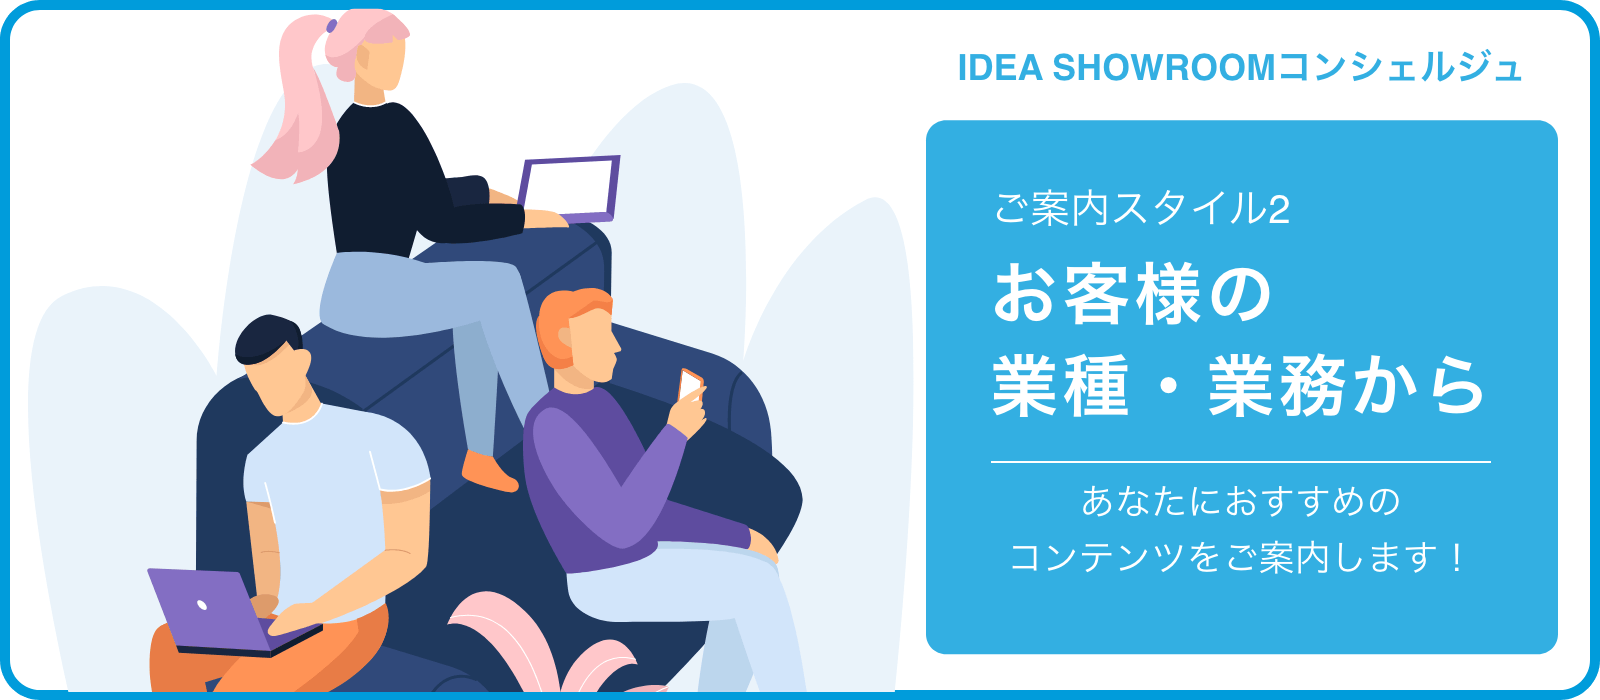 IDEA SHOWROOMコンシェルジュ ご案内スタイル2 お客様の業種・業務から あなたにおすすめのコンテンツをご案内します！